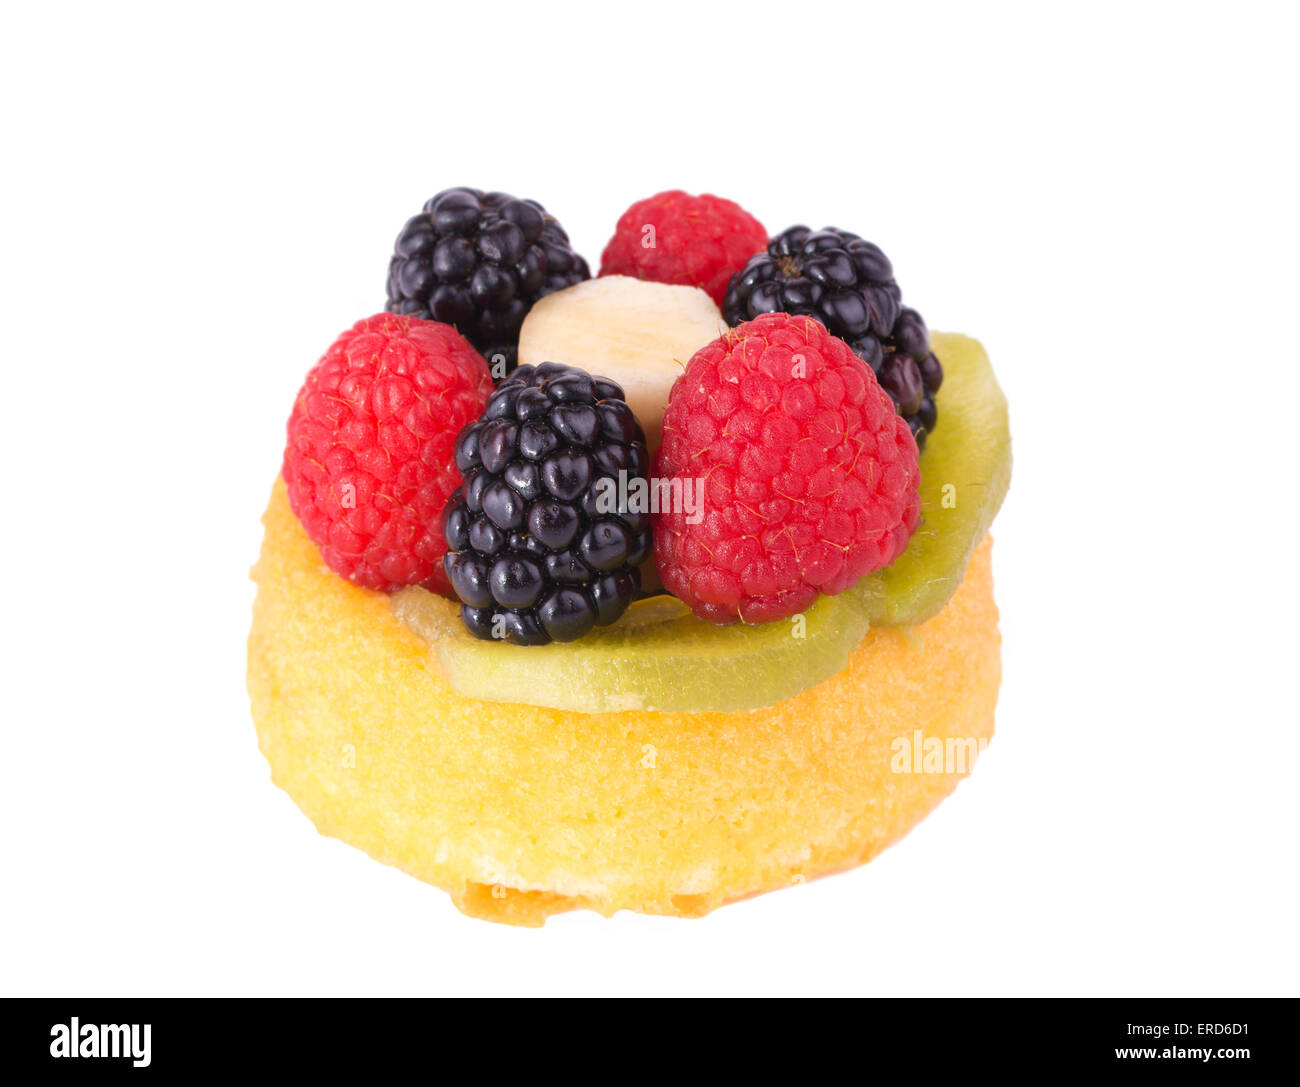 Raspberries, kiwi, banana and blackberries topping a dessert shell, on white Stock Photo